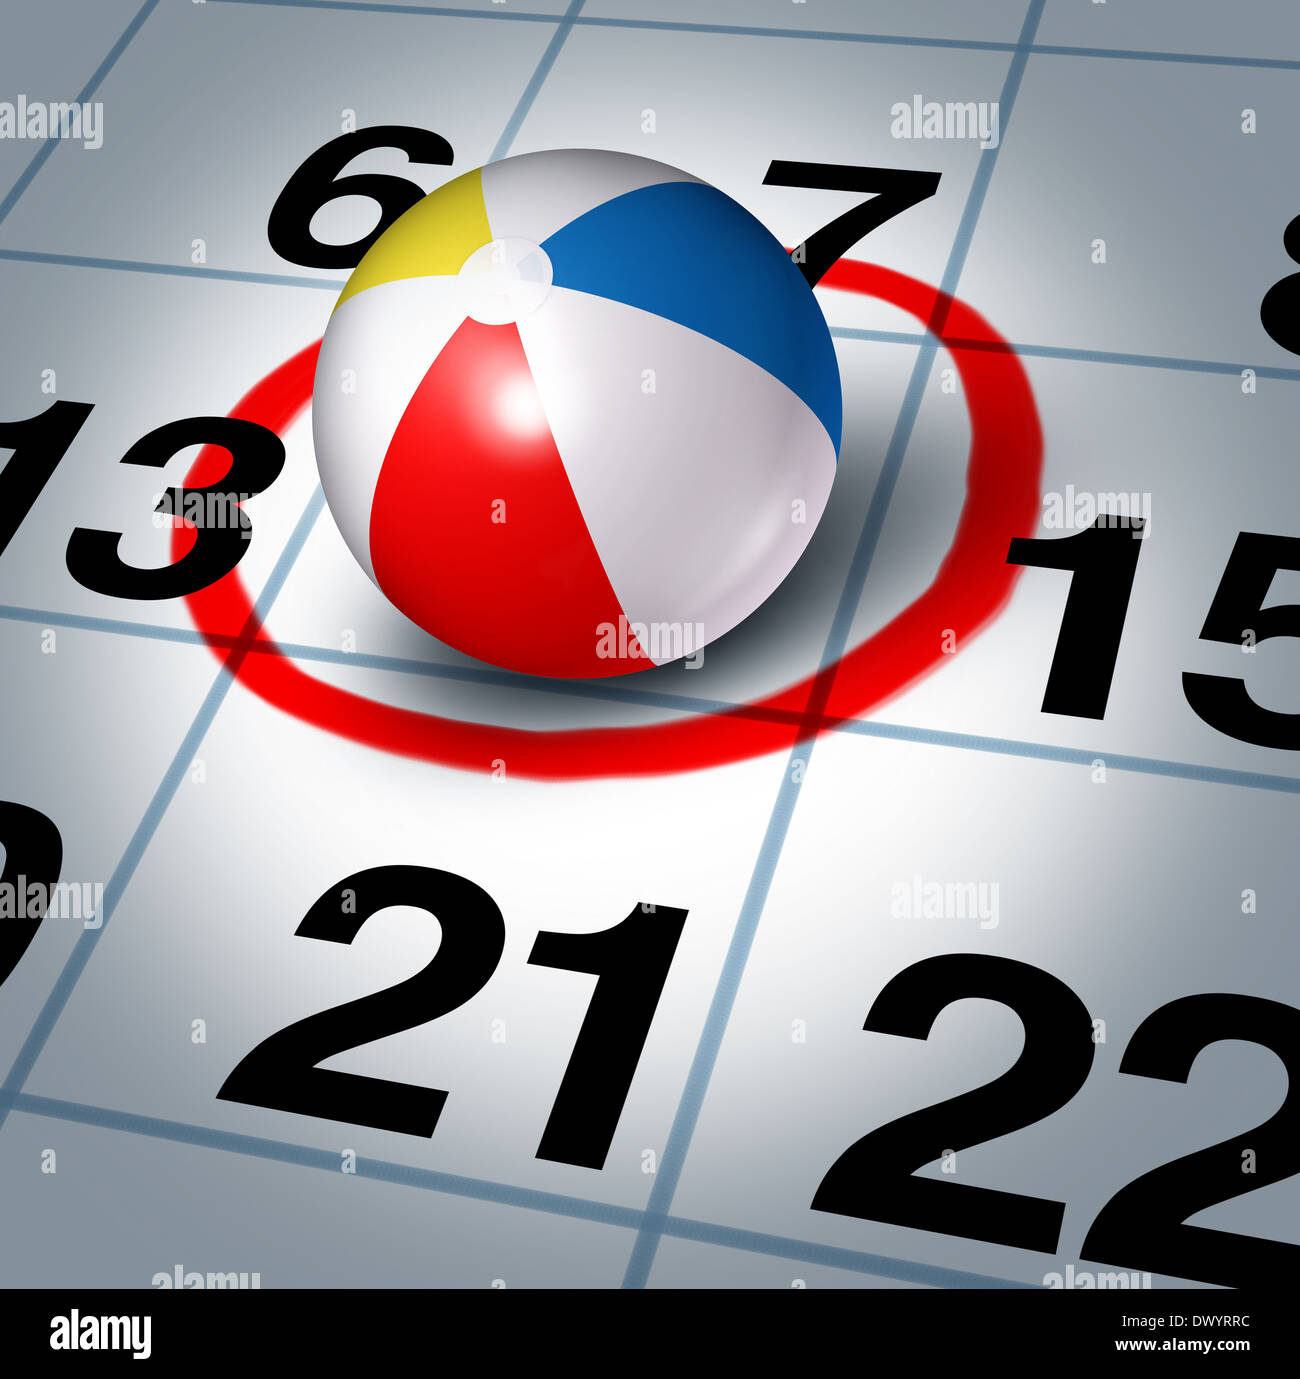 Urlaubsplanung und planen Ihre Reise mit einem Wasserball auf einen Kalender mit einem roten Highlight Kreis als Symbol für Spaß Zeit Erholung Pause Plan. Stockfoto